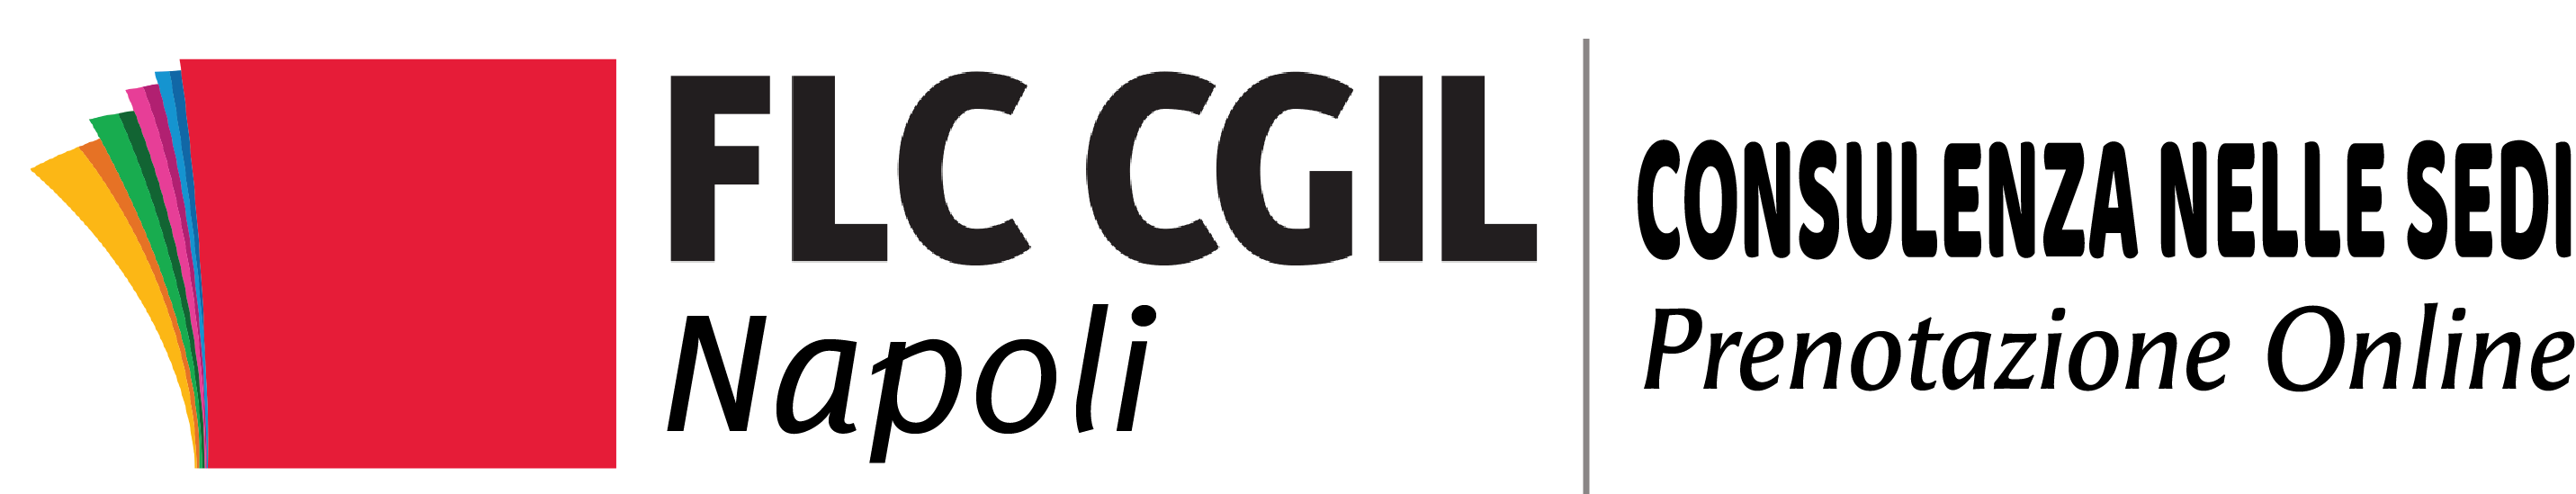 FLC CGIL Napoli – Prenotazioni Online